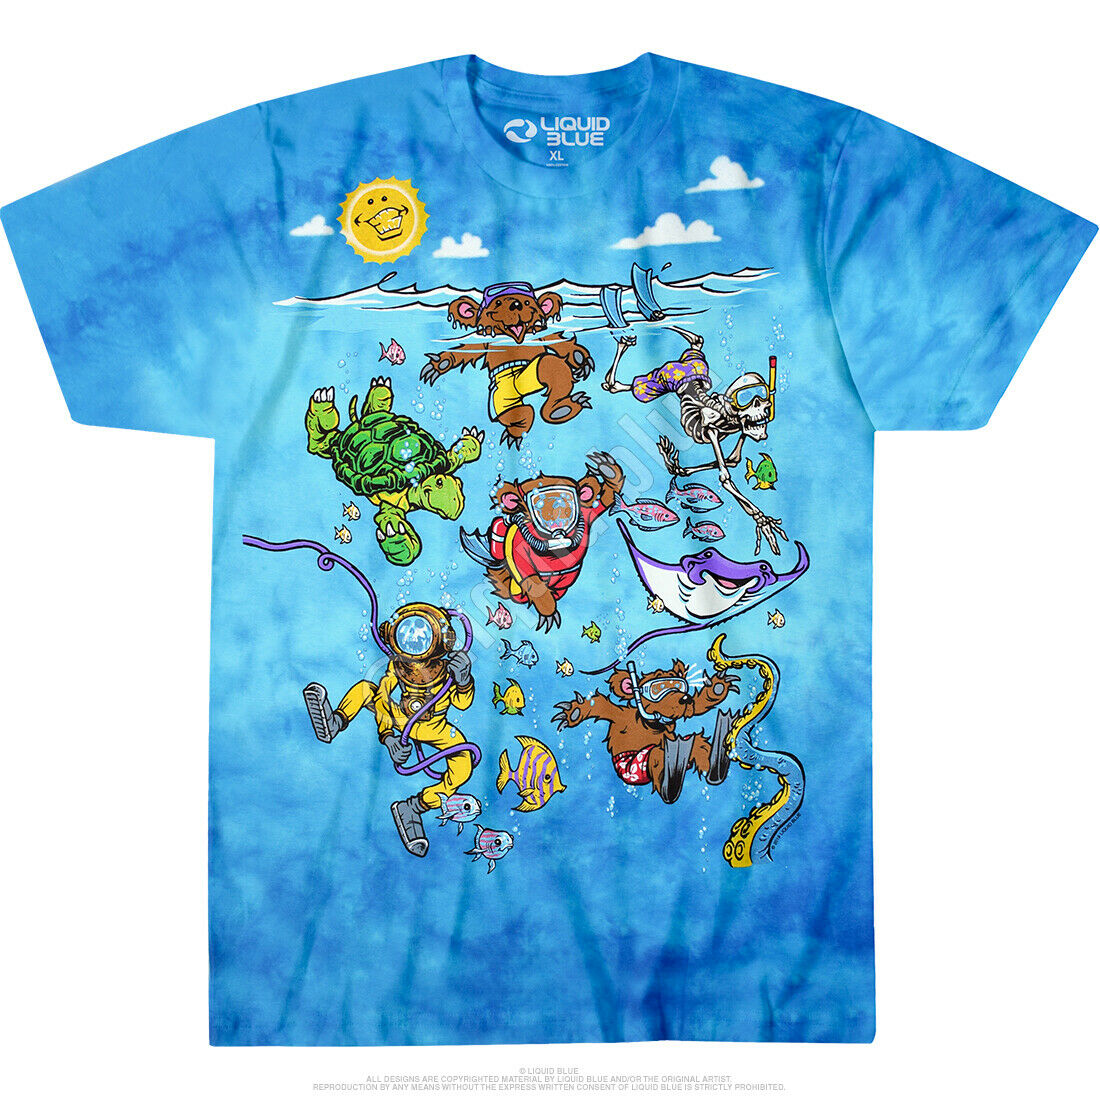 Grateful Dead Sea Swimming Terrapin Bear Tie Dye Tshirt S M L Xl Xxl 3x 4x 5x 6x Xetsy